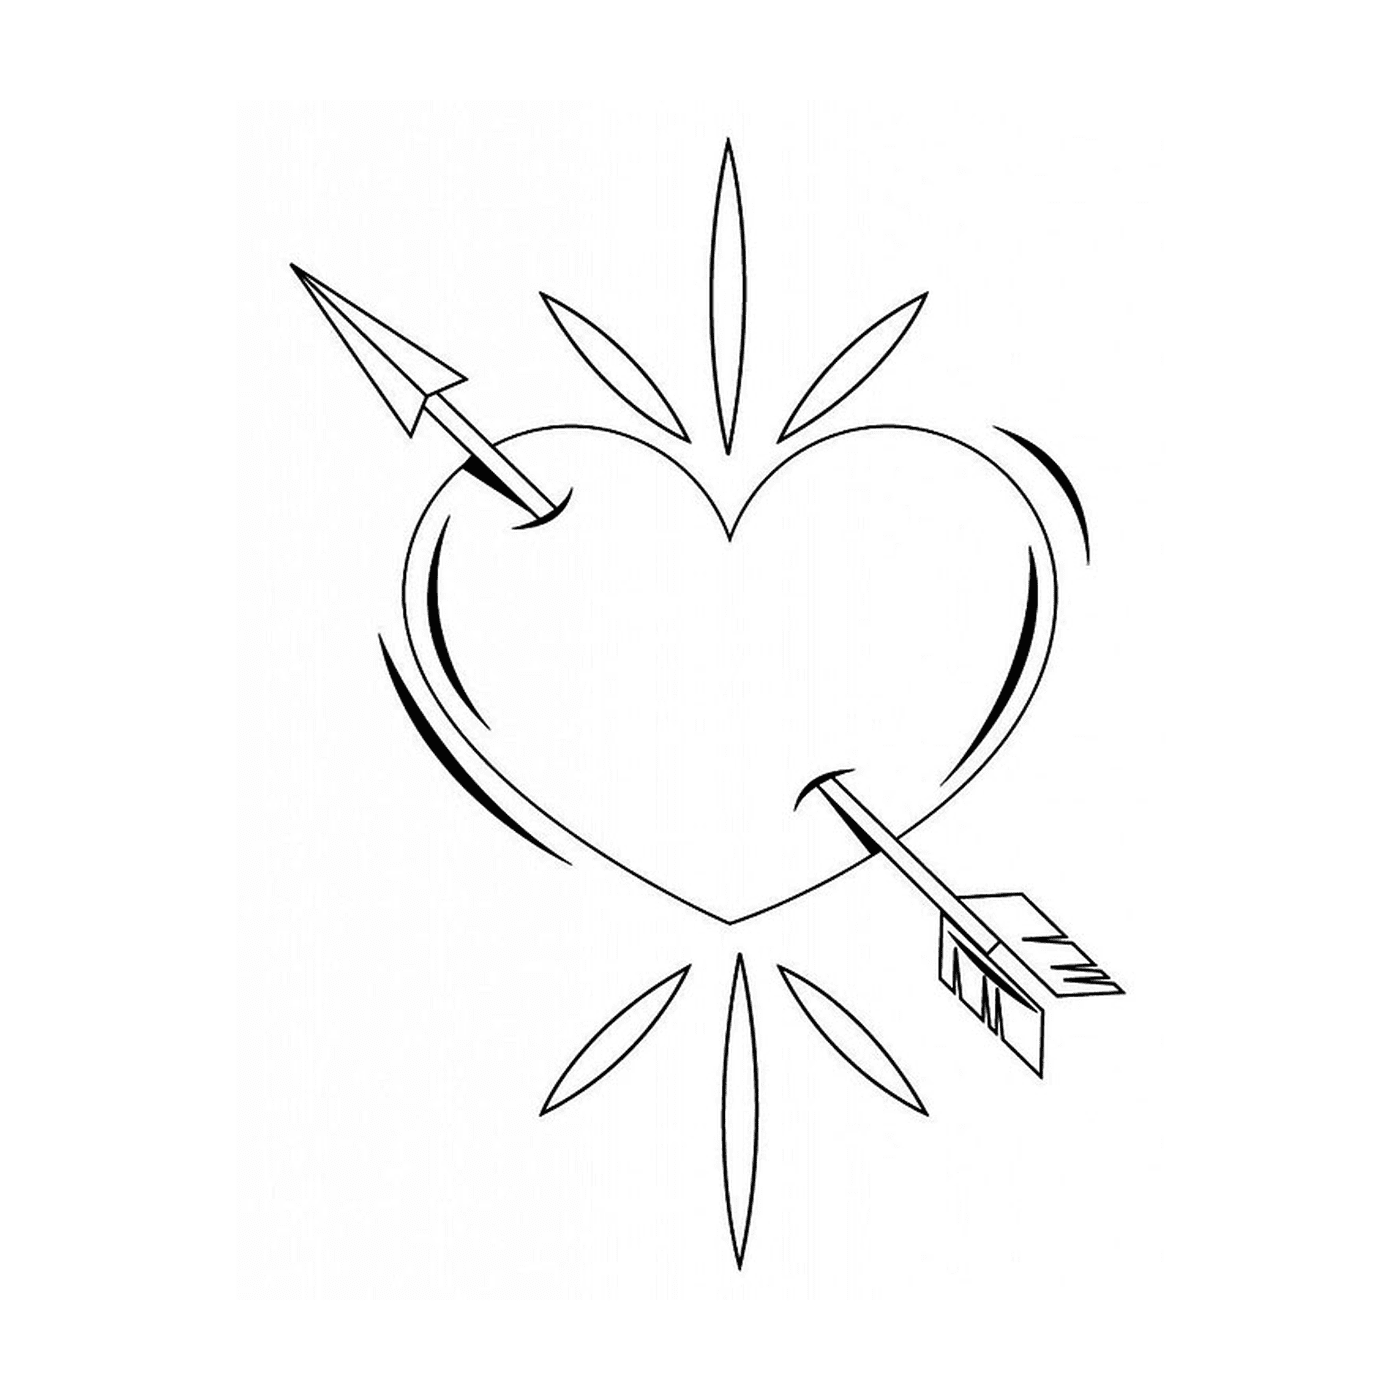  Un cuore trafitto da una freccia disegnata con inchiostro nero 